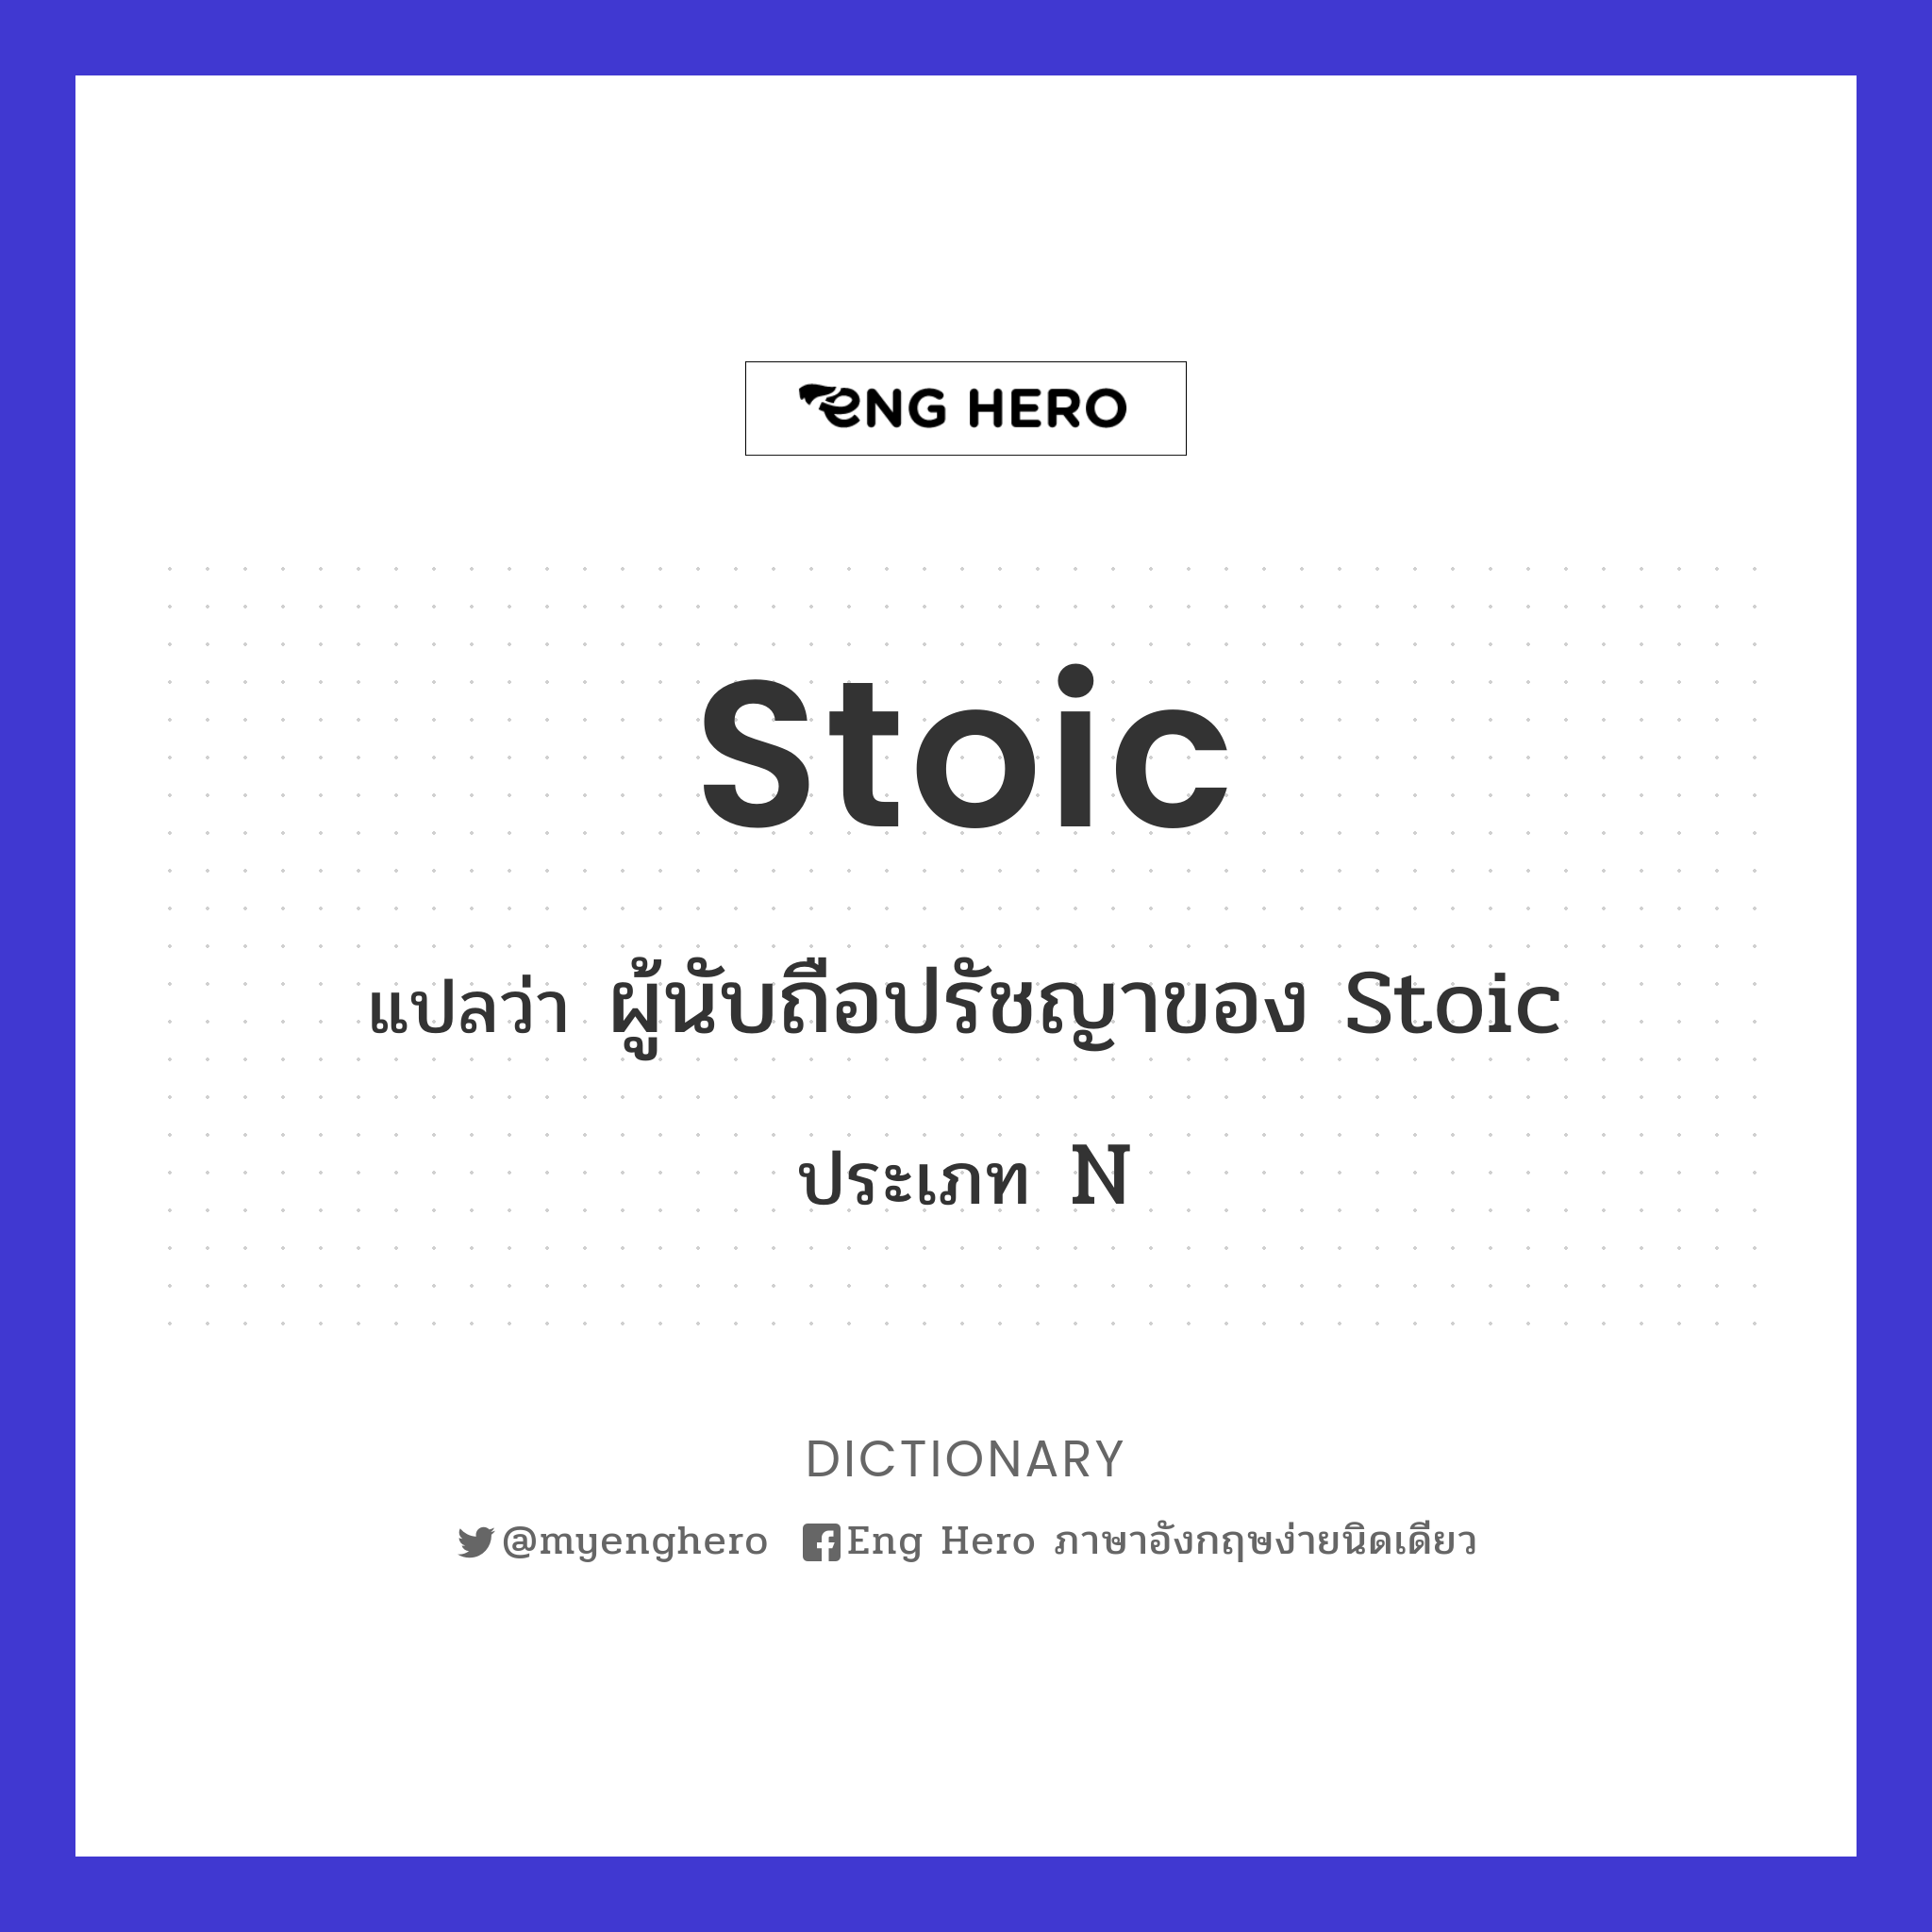 stoic